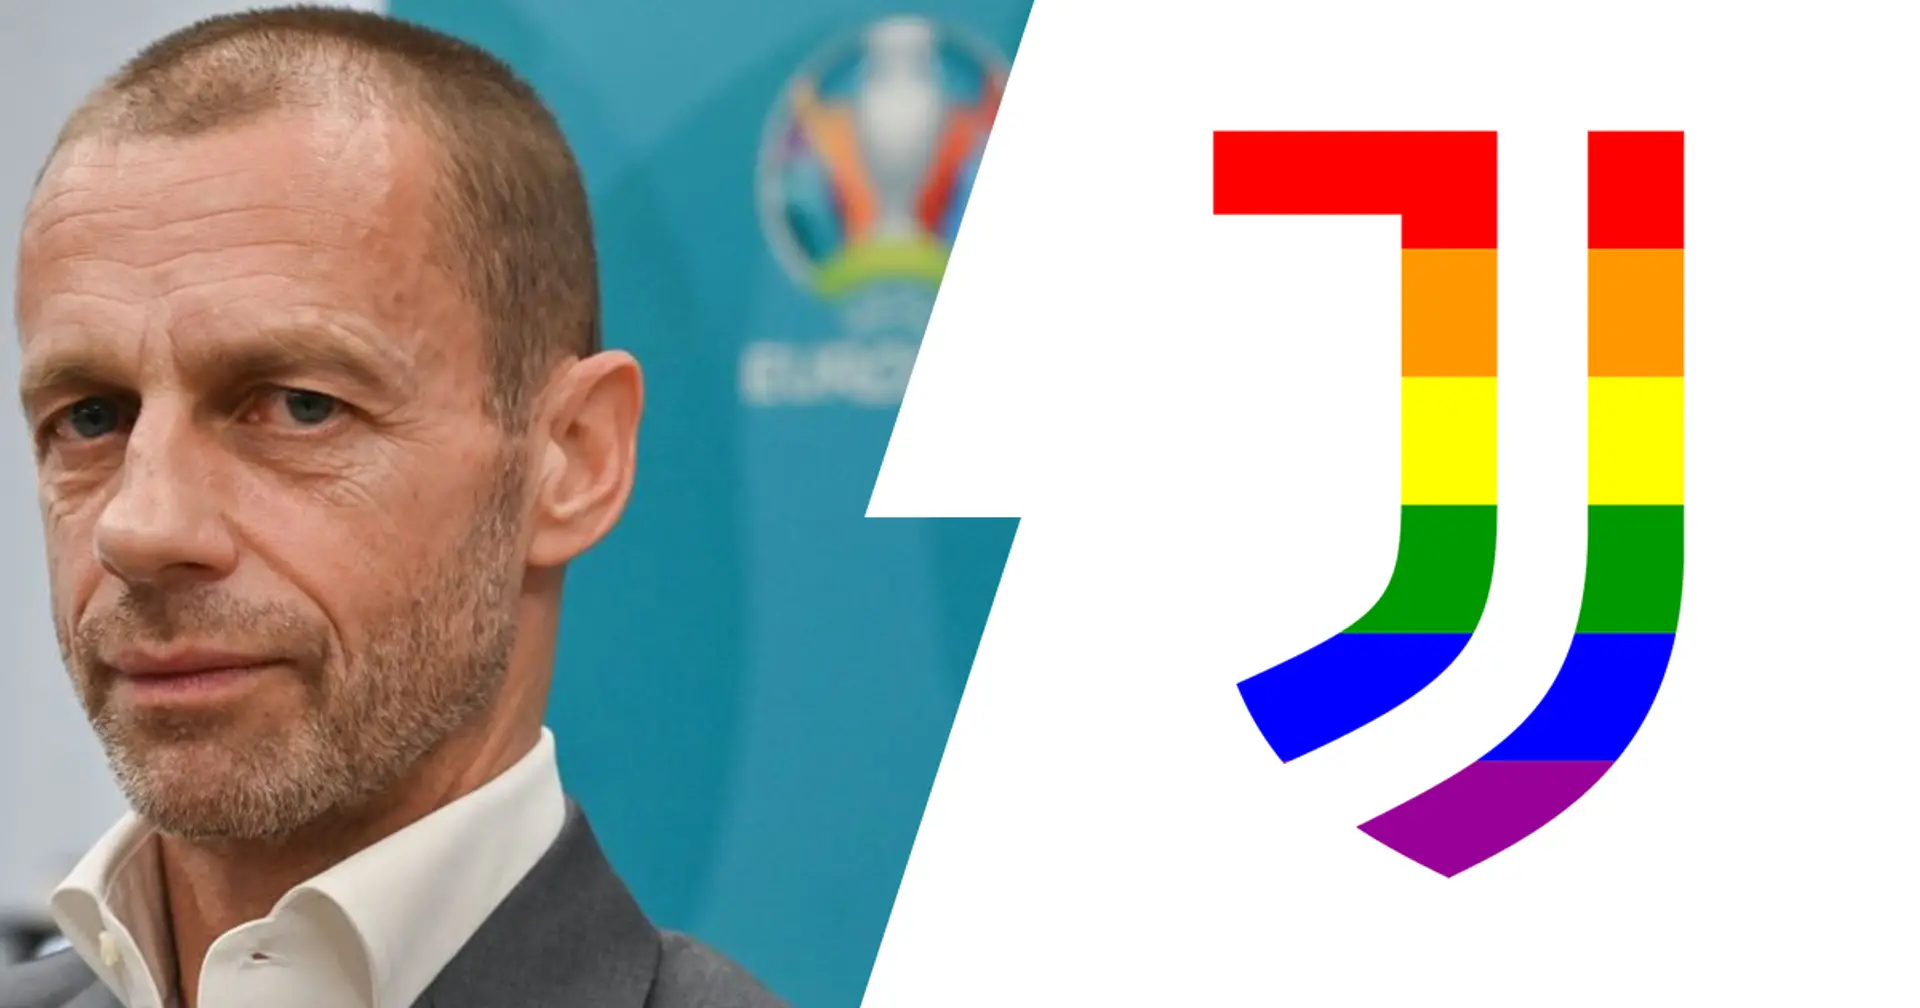 La UEFA blocca lo stadio "arcobaleno" ad EURO 2020: la Juve si schiera in difesa dei diritti LGBT